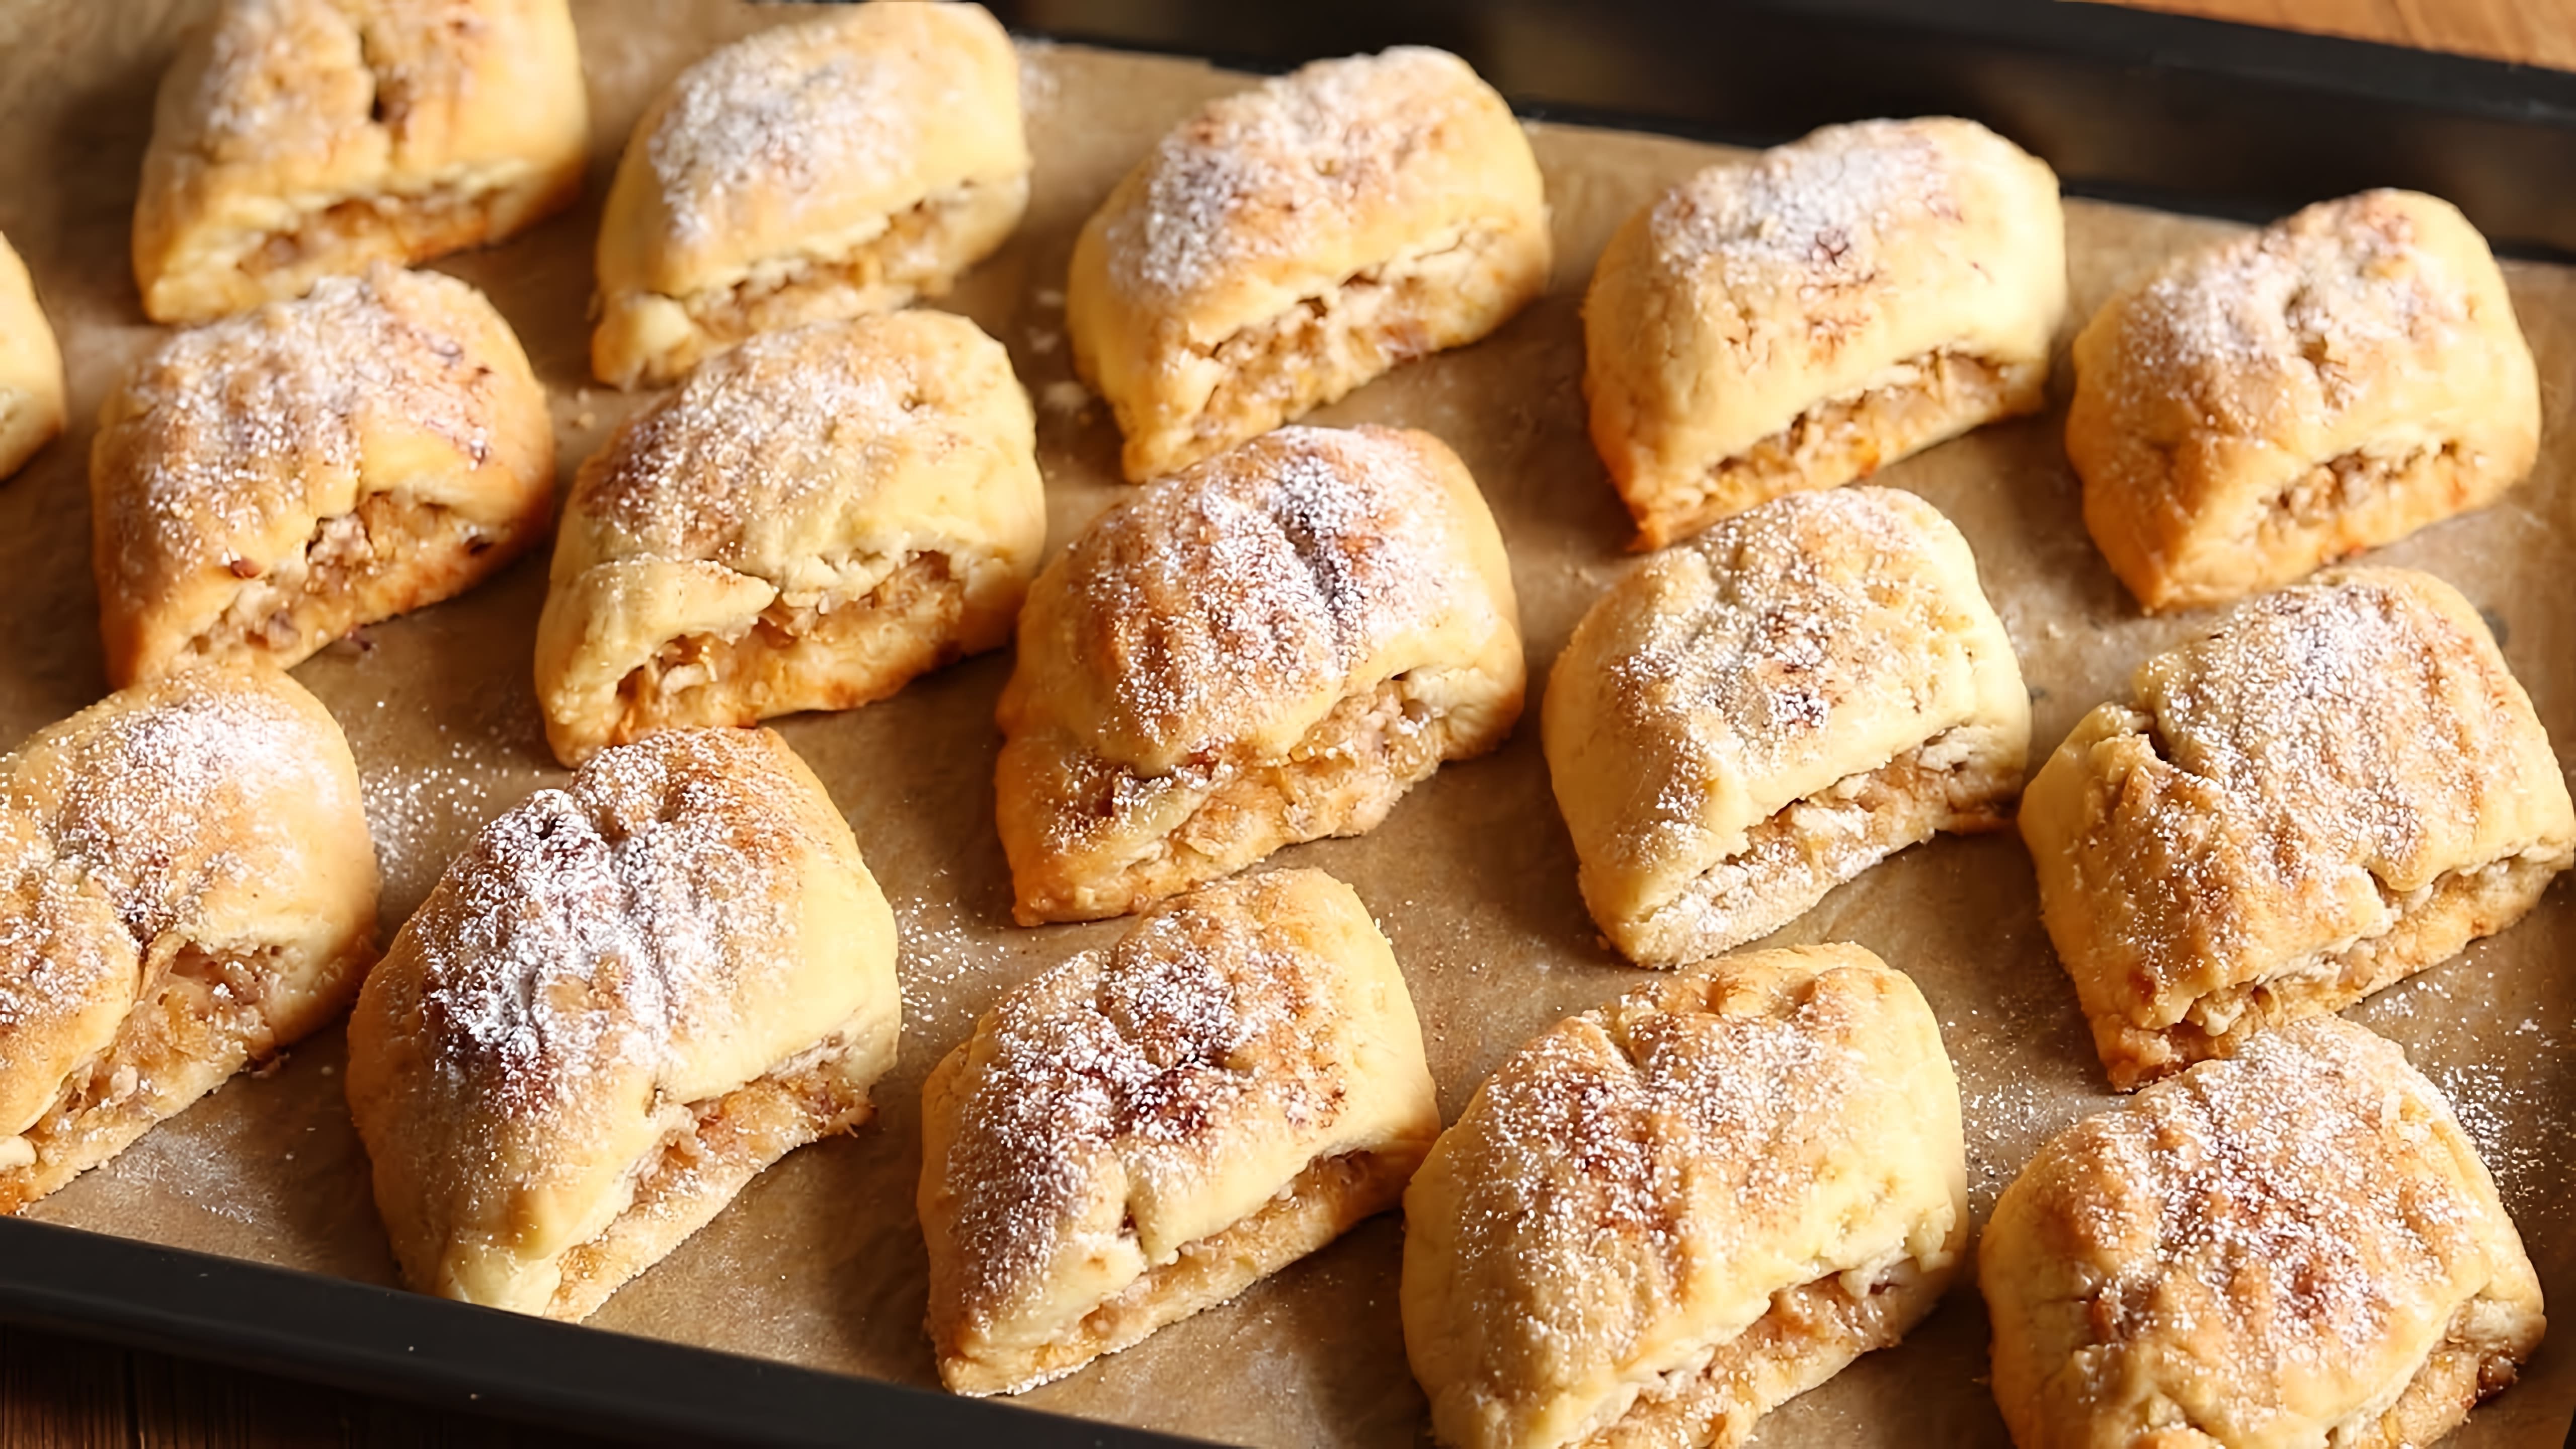 В этом видео демонстрируется рецепт приготовления печенья "Калахари" с яблочной начинкой